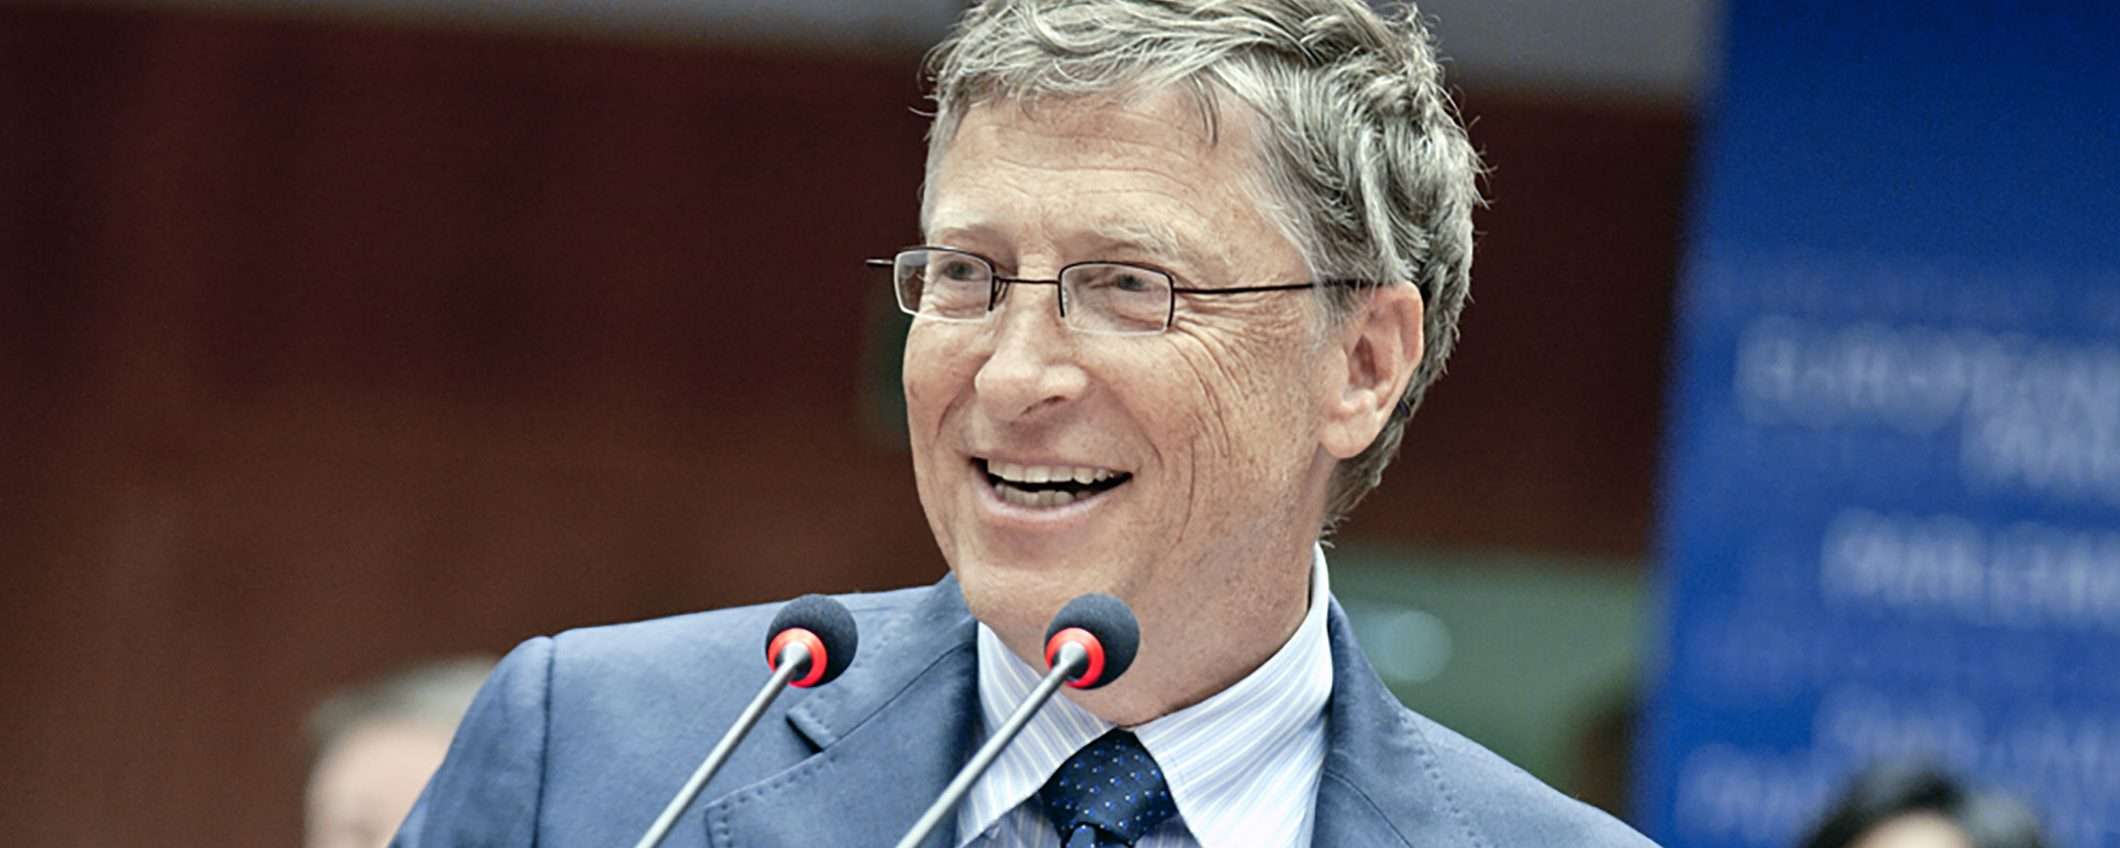 La fontana di Bill Gates a Roma: facciamo chiarezza